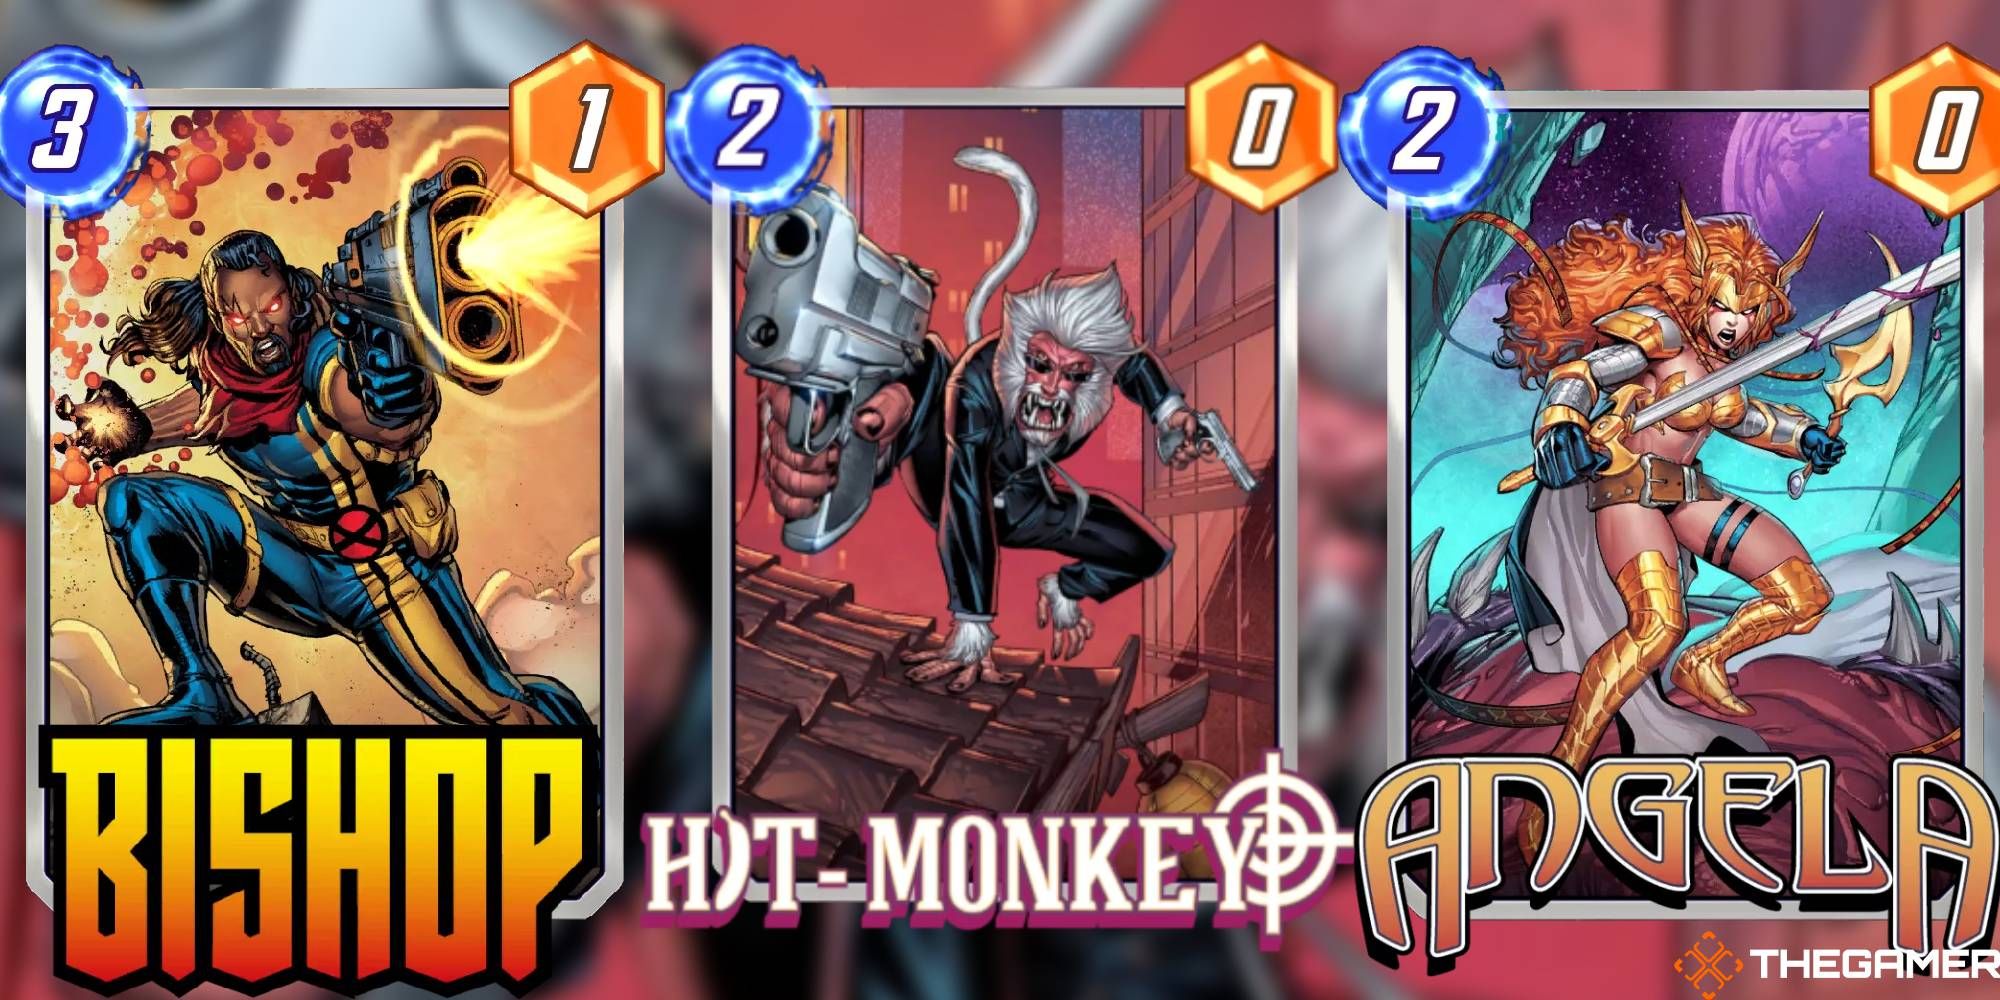 Hit-Monkey - Marvel Snap - snap.fan in 2023